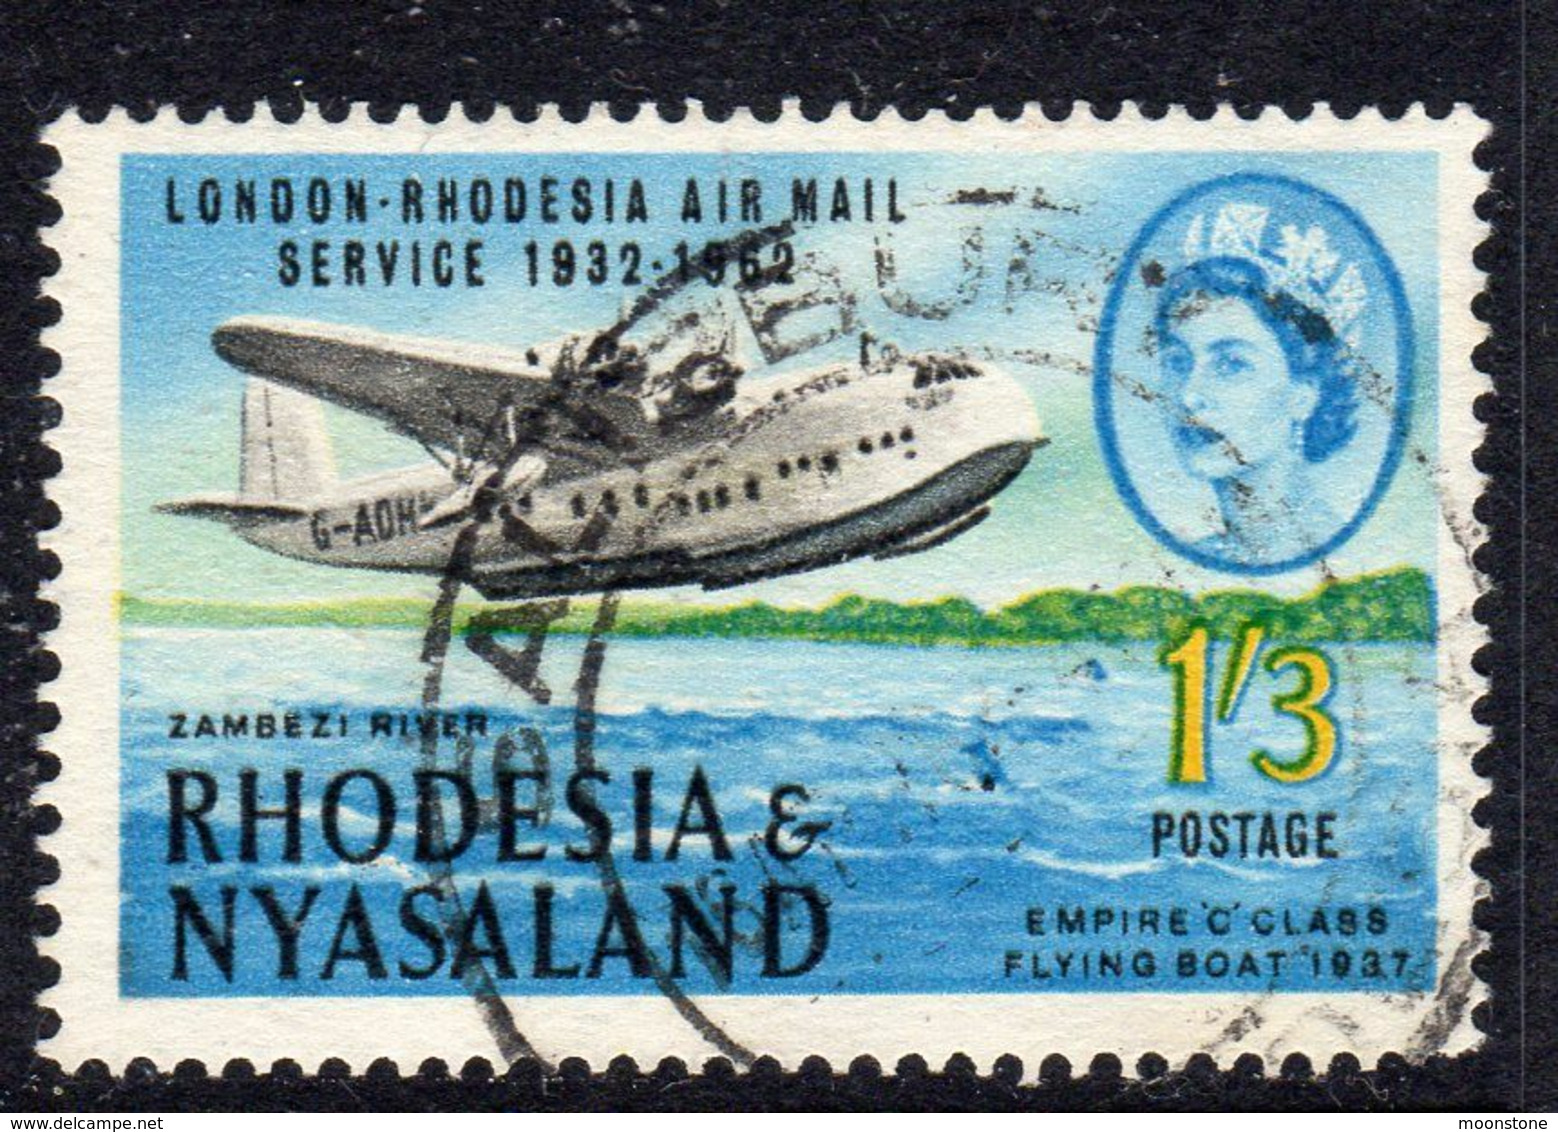 Rhodesia & Nyasaland 1962 30th Anniversary Of 1st Airmail Service 1/3d Value, Used, SG 41 (BA) - Rhodesia & Nyasaland (1954-1963)